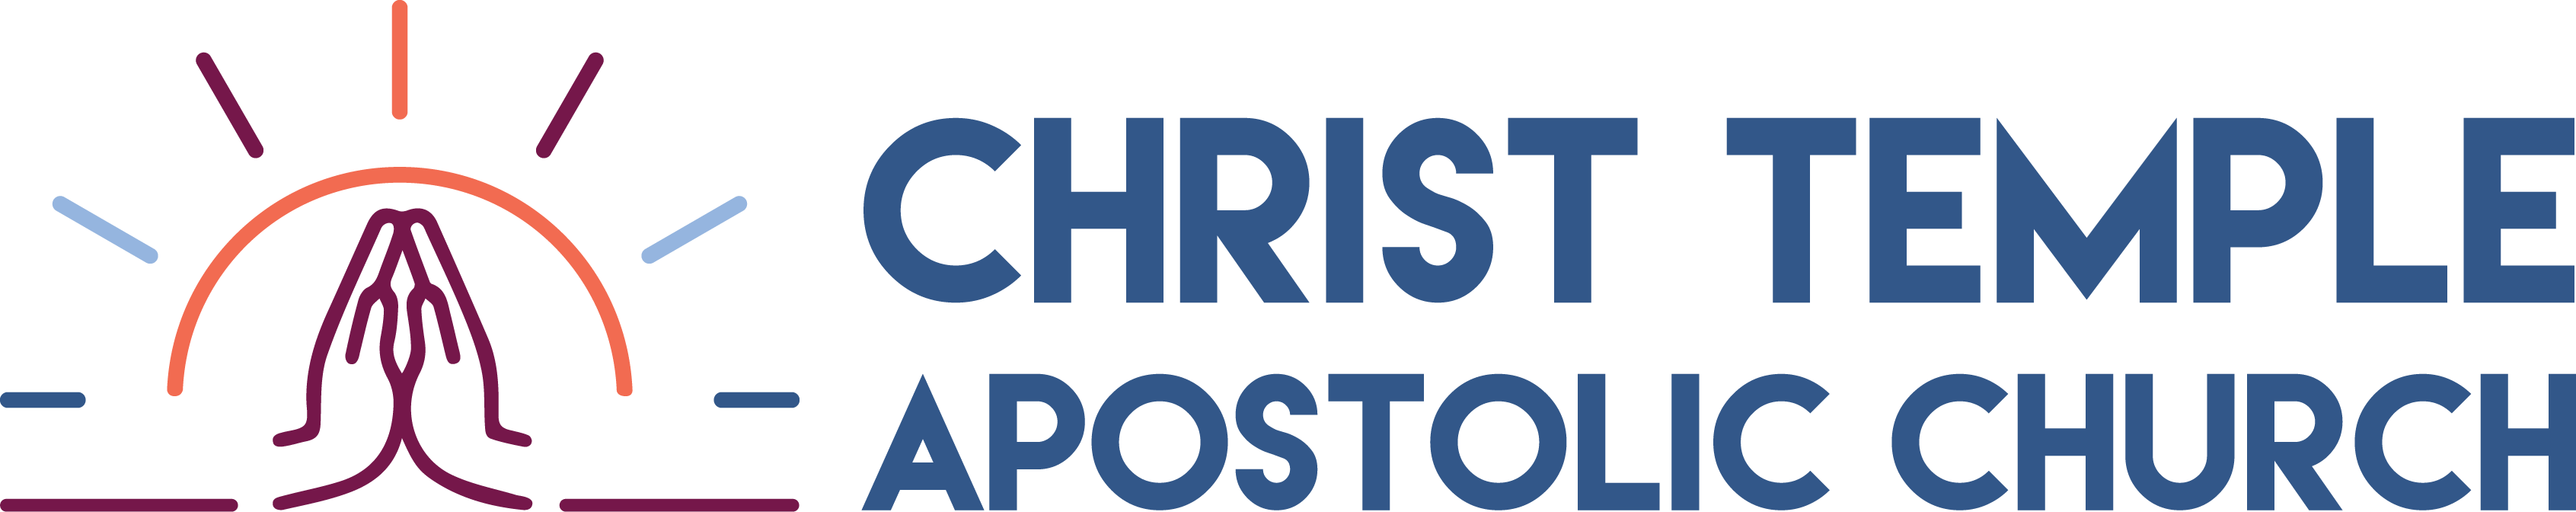 CHRIST TEMPLE APOSTOLIC CHURCH